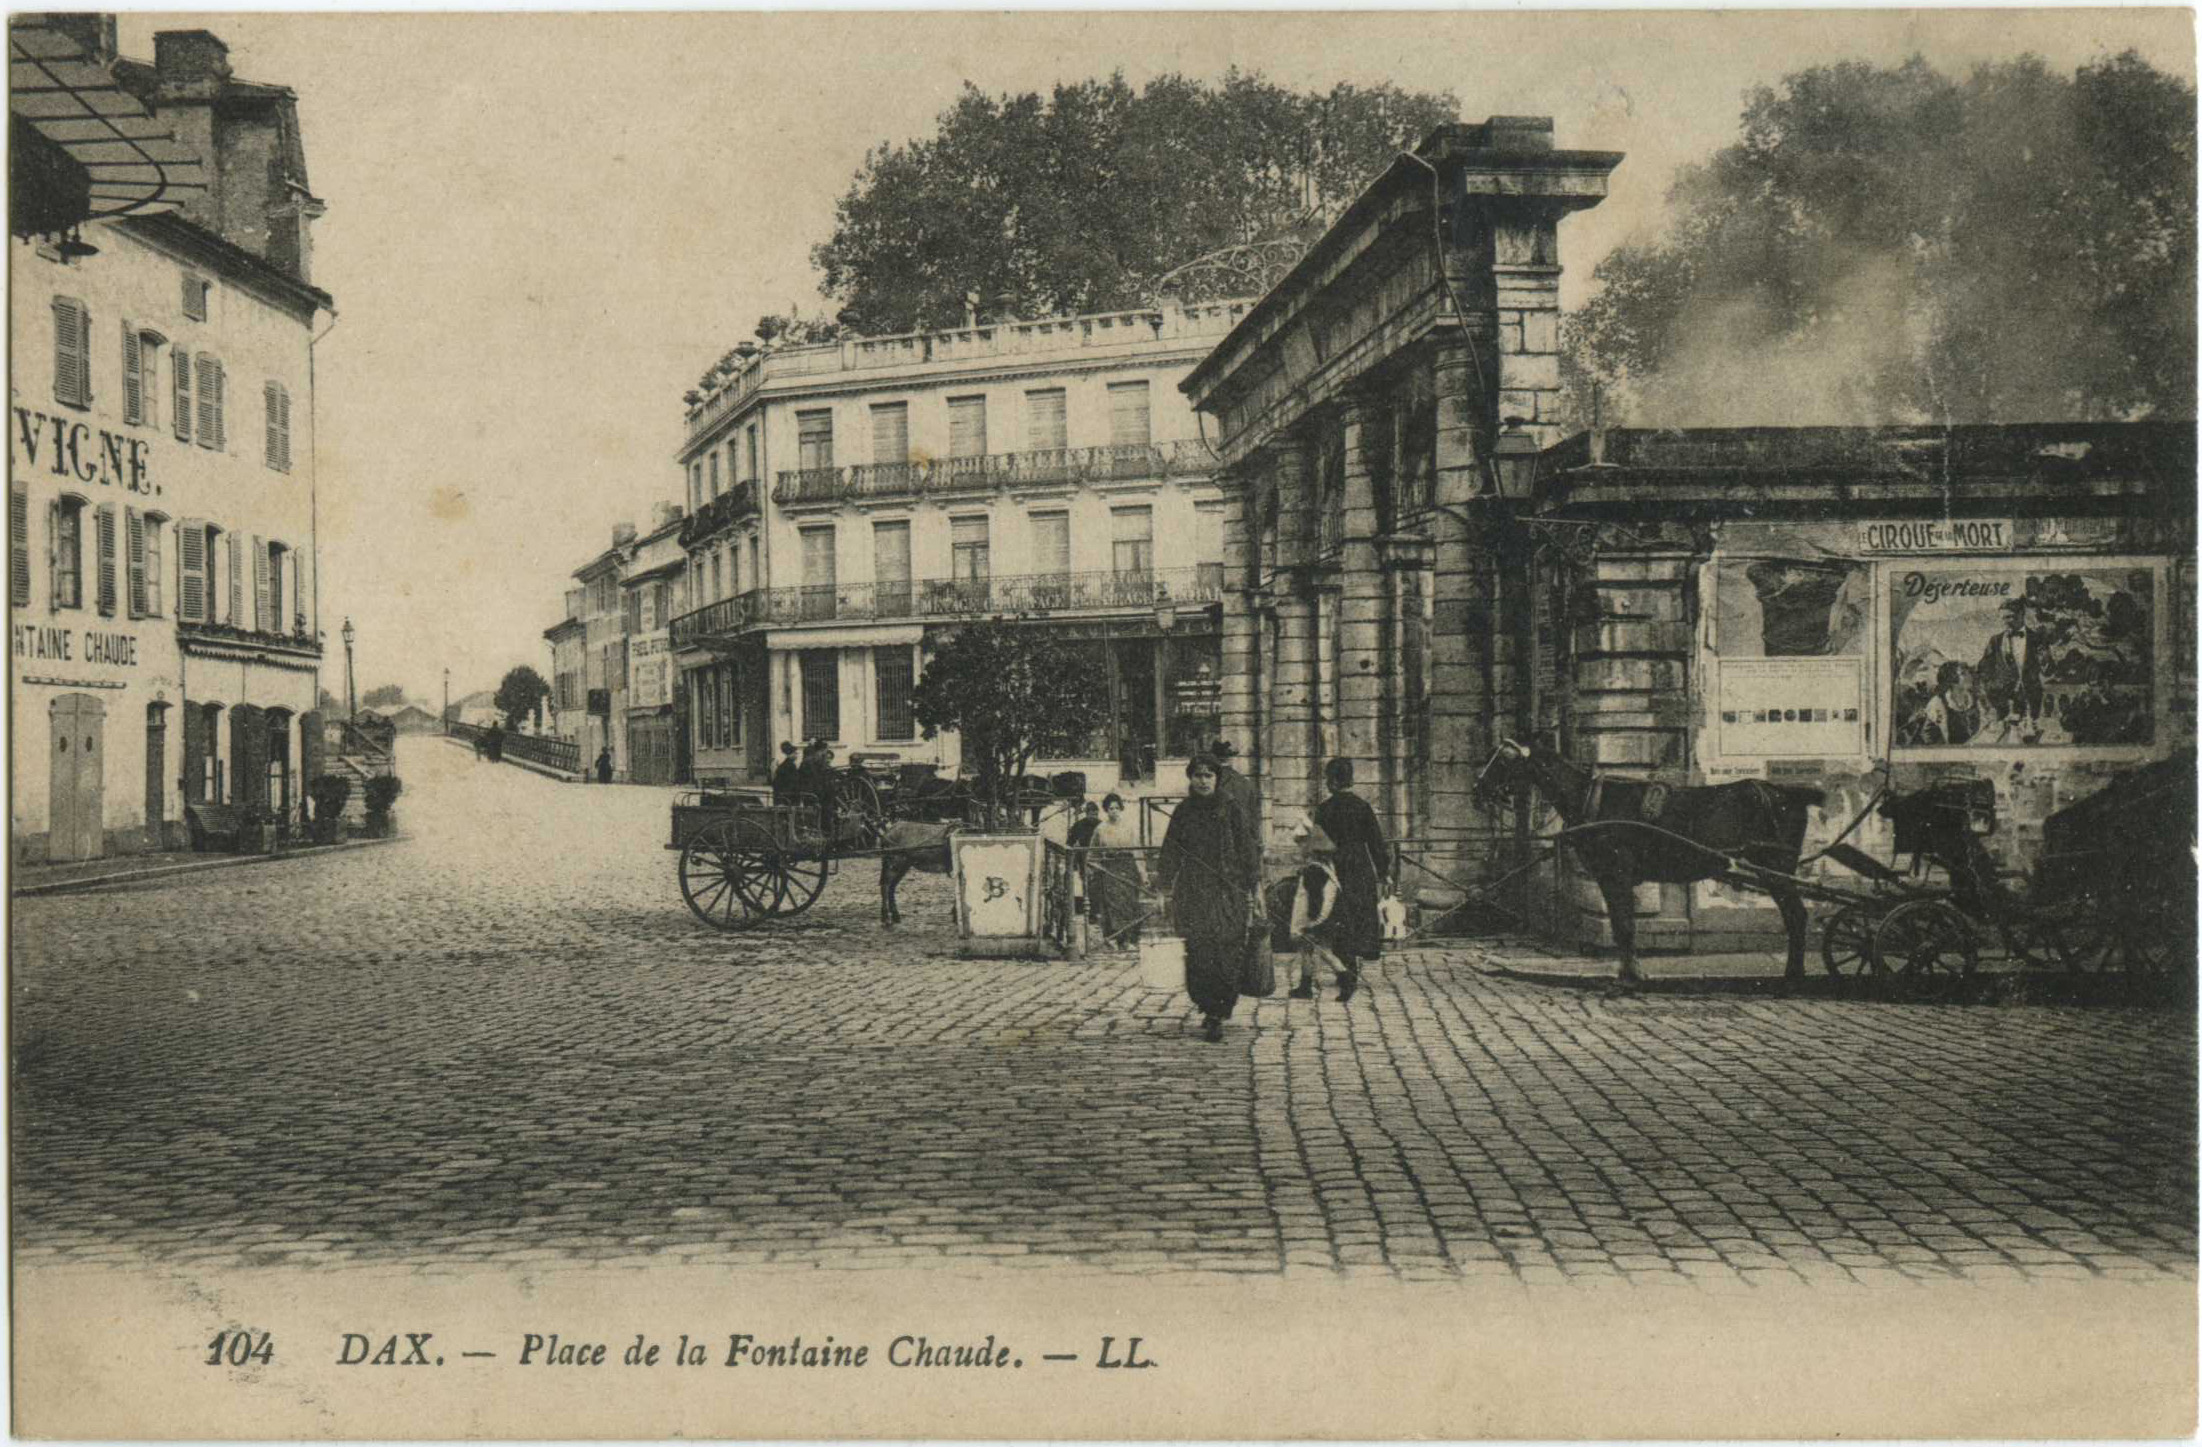 Dax - Place de la Fontaine Chaude.